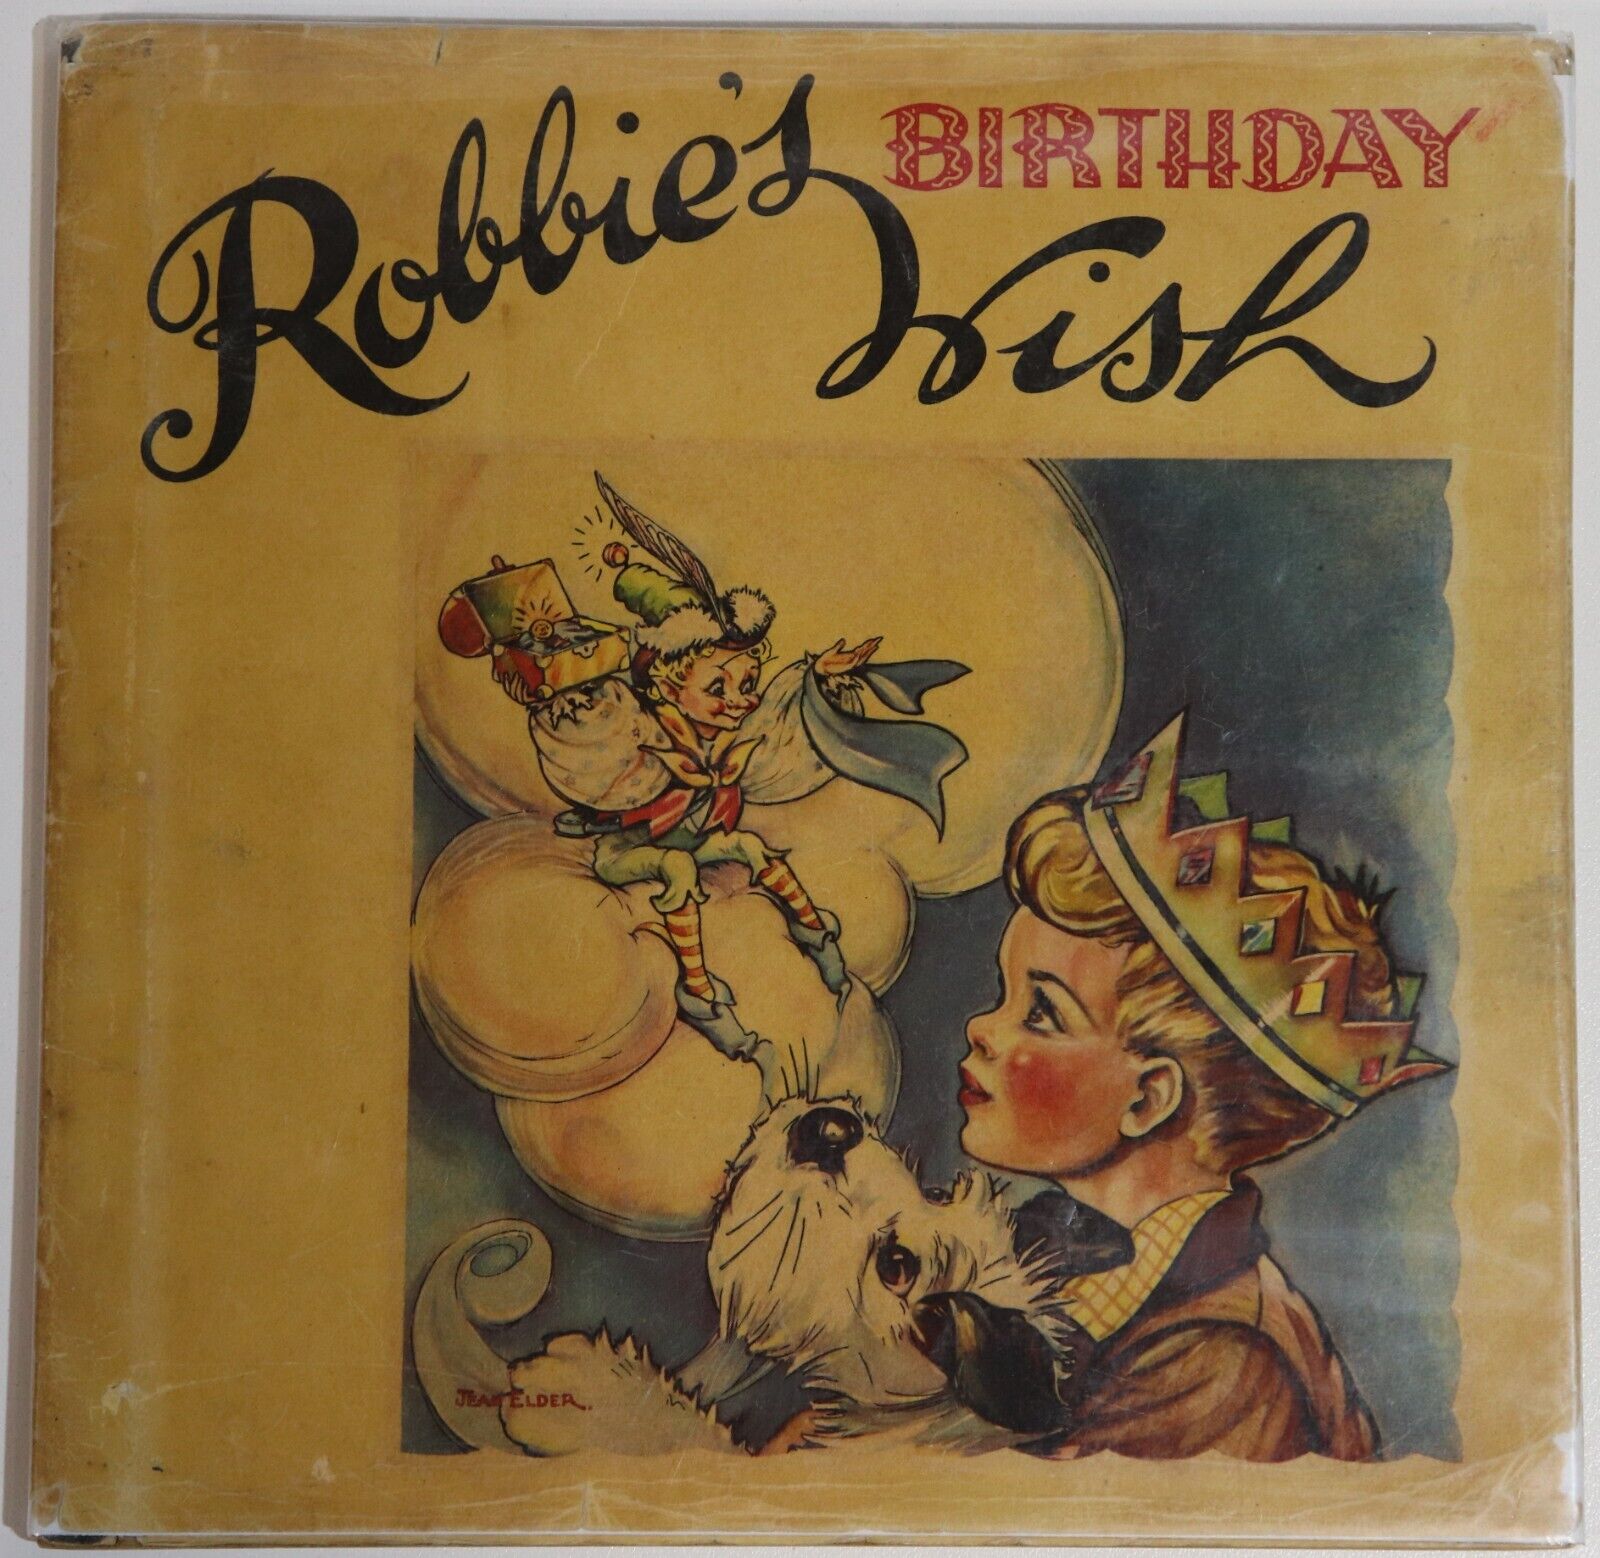 Robbie's Birthday Wish by Phyllis Johnson - c1950 - Vintage Children's Book